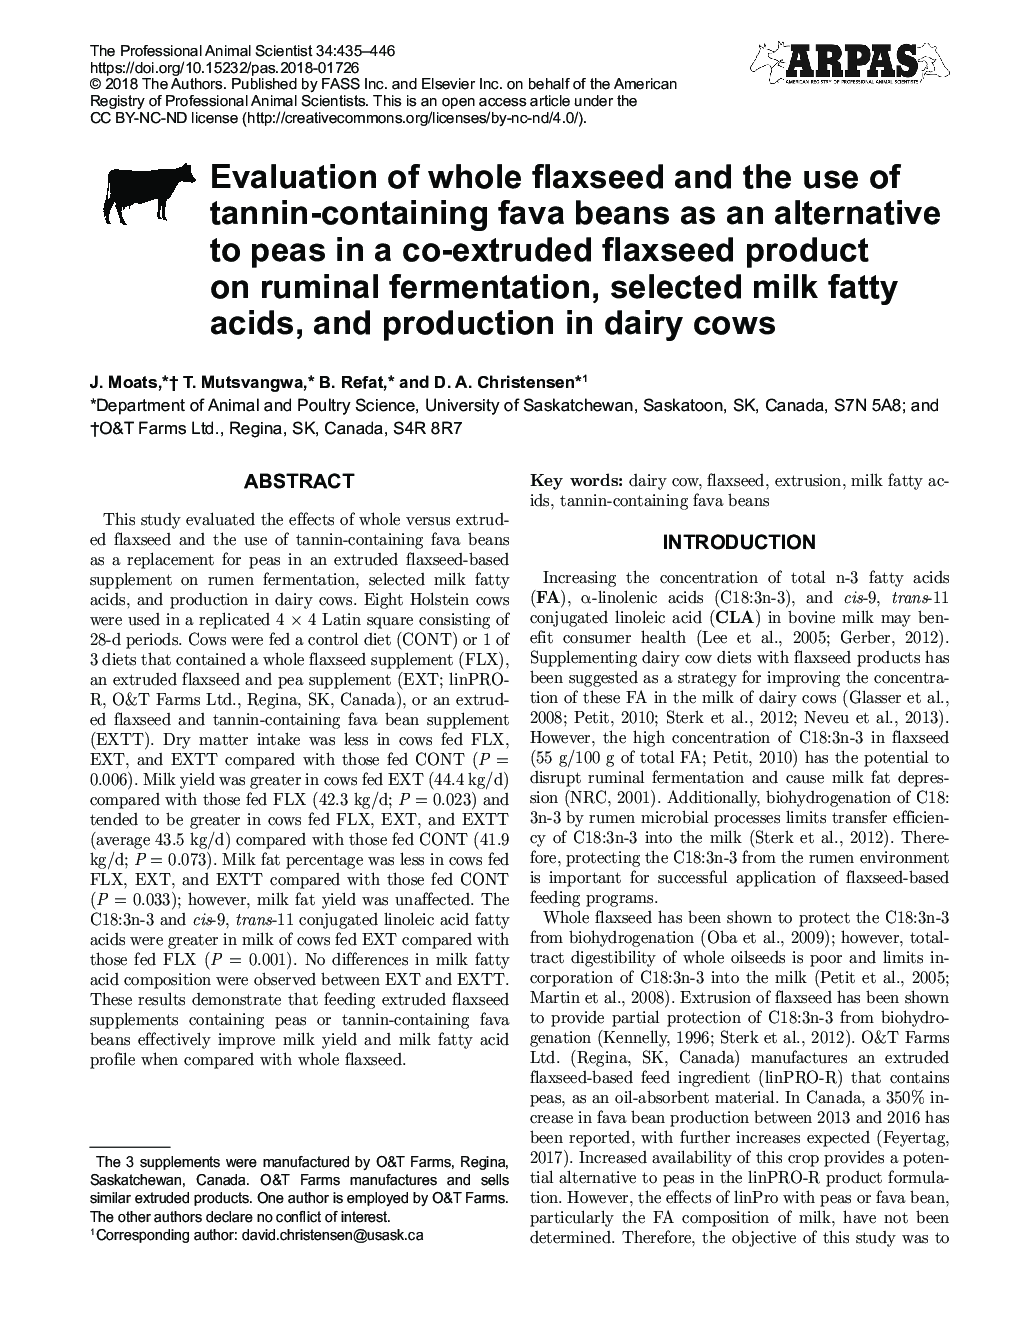 ارزیابی کل دانه کتان و استفاده از لوبیا فووا حاوی تانن به عنوان یک جایگزین برای نخود فرنگی در یک محصول کتان اکسترود شده بر روی تخمیر شخم، اسید های چرب شیر انتخاب شده و تولید در گاوهای شیری